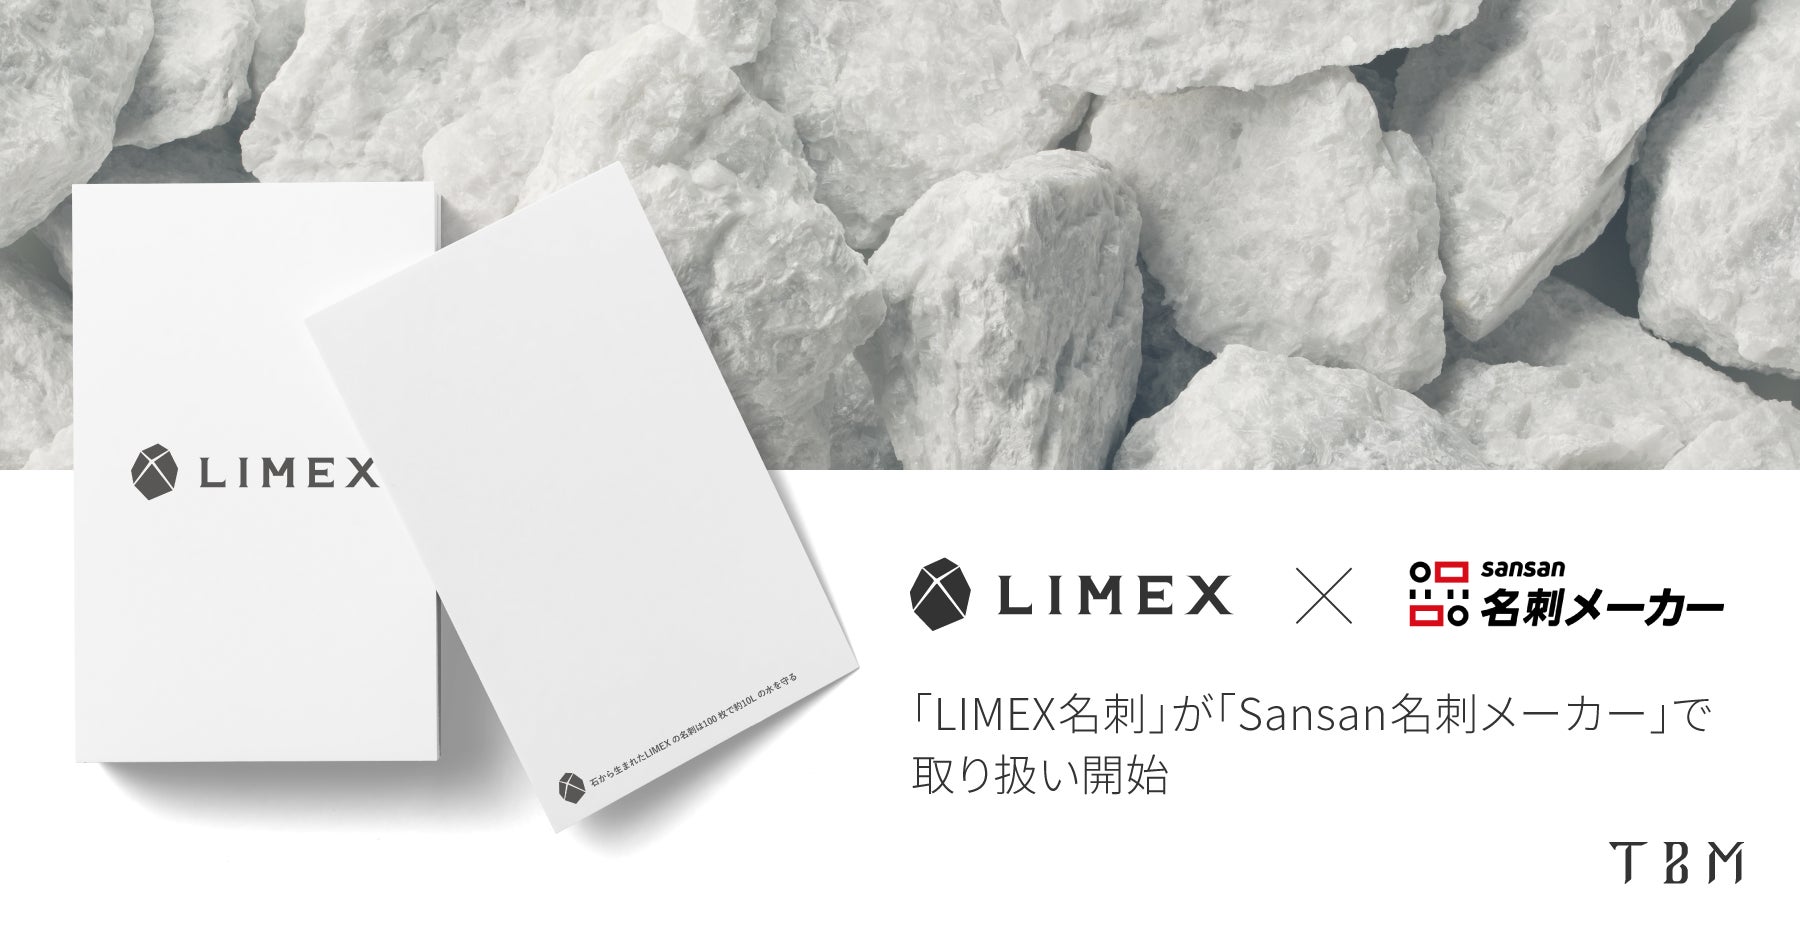 石灰石を主原料とする「LIMEX名刺」が、名刺作成サービス「Sansan名刺メーカー」で取り扱い開始のサブ画像1